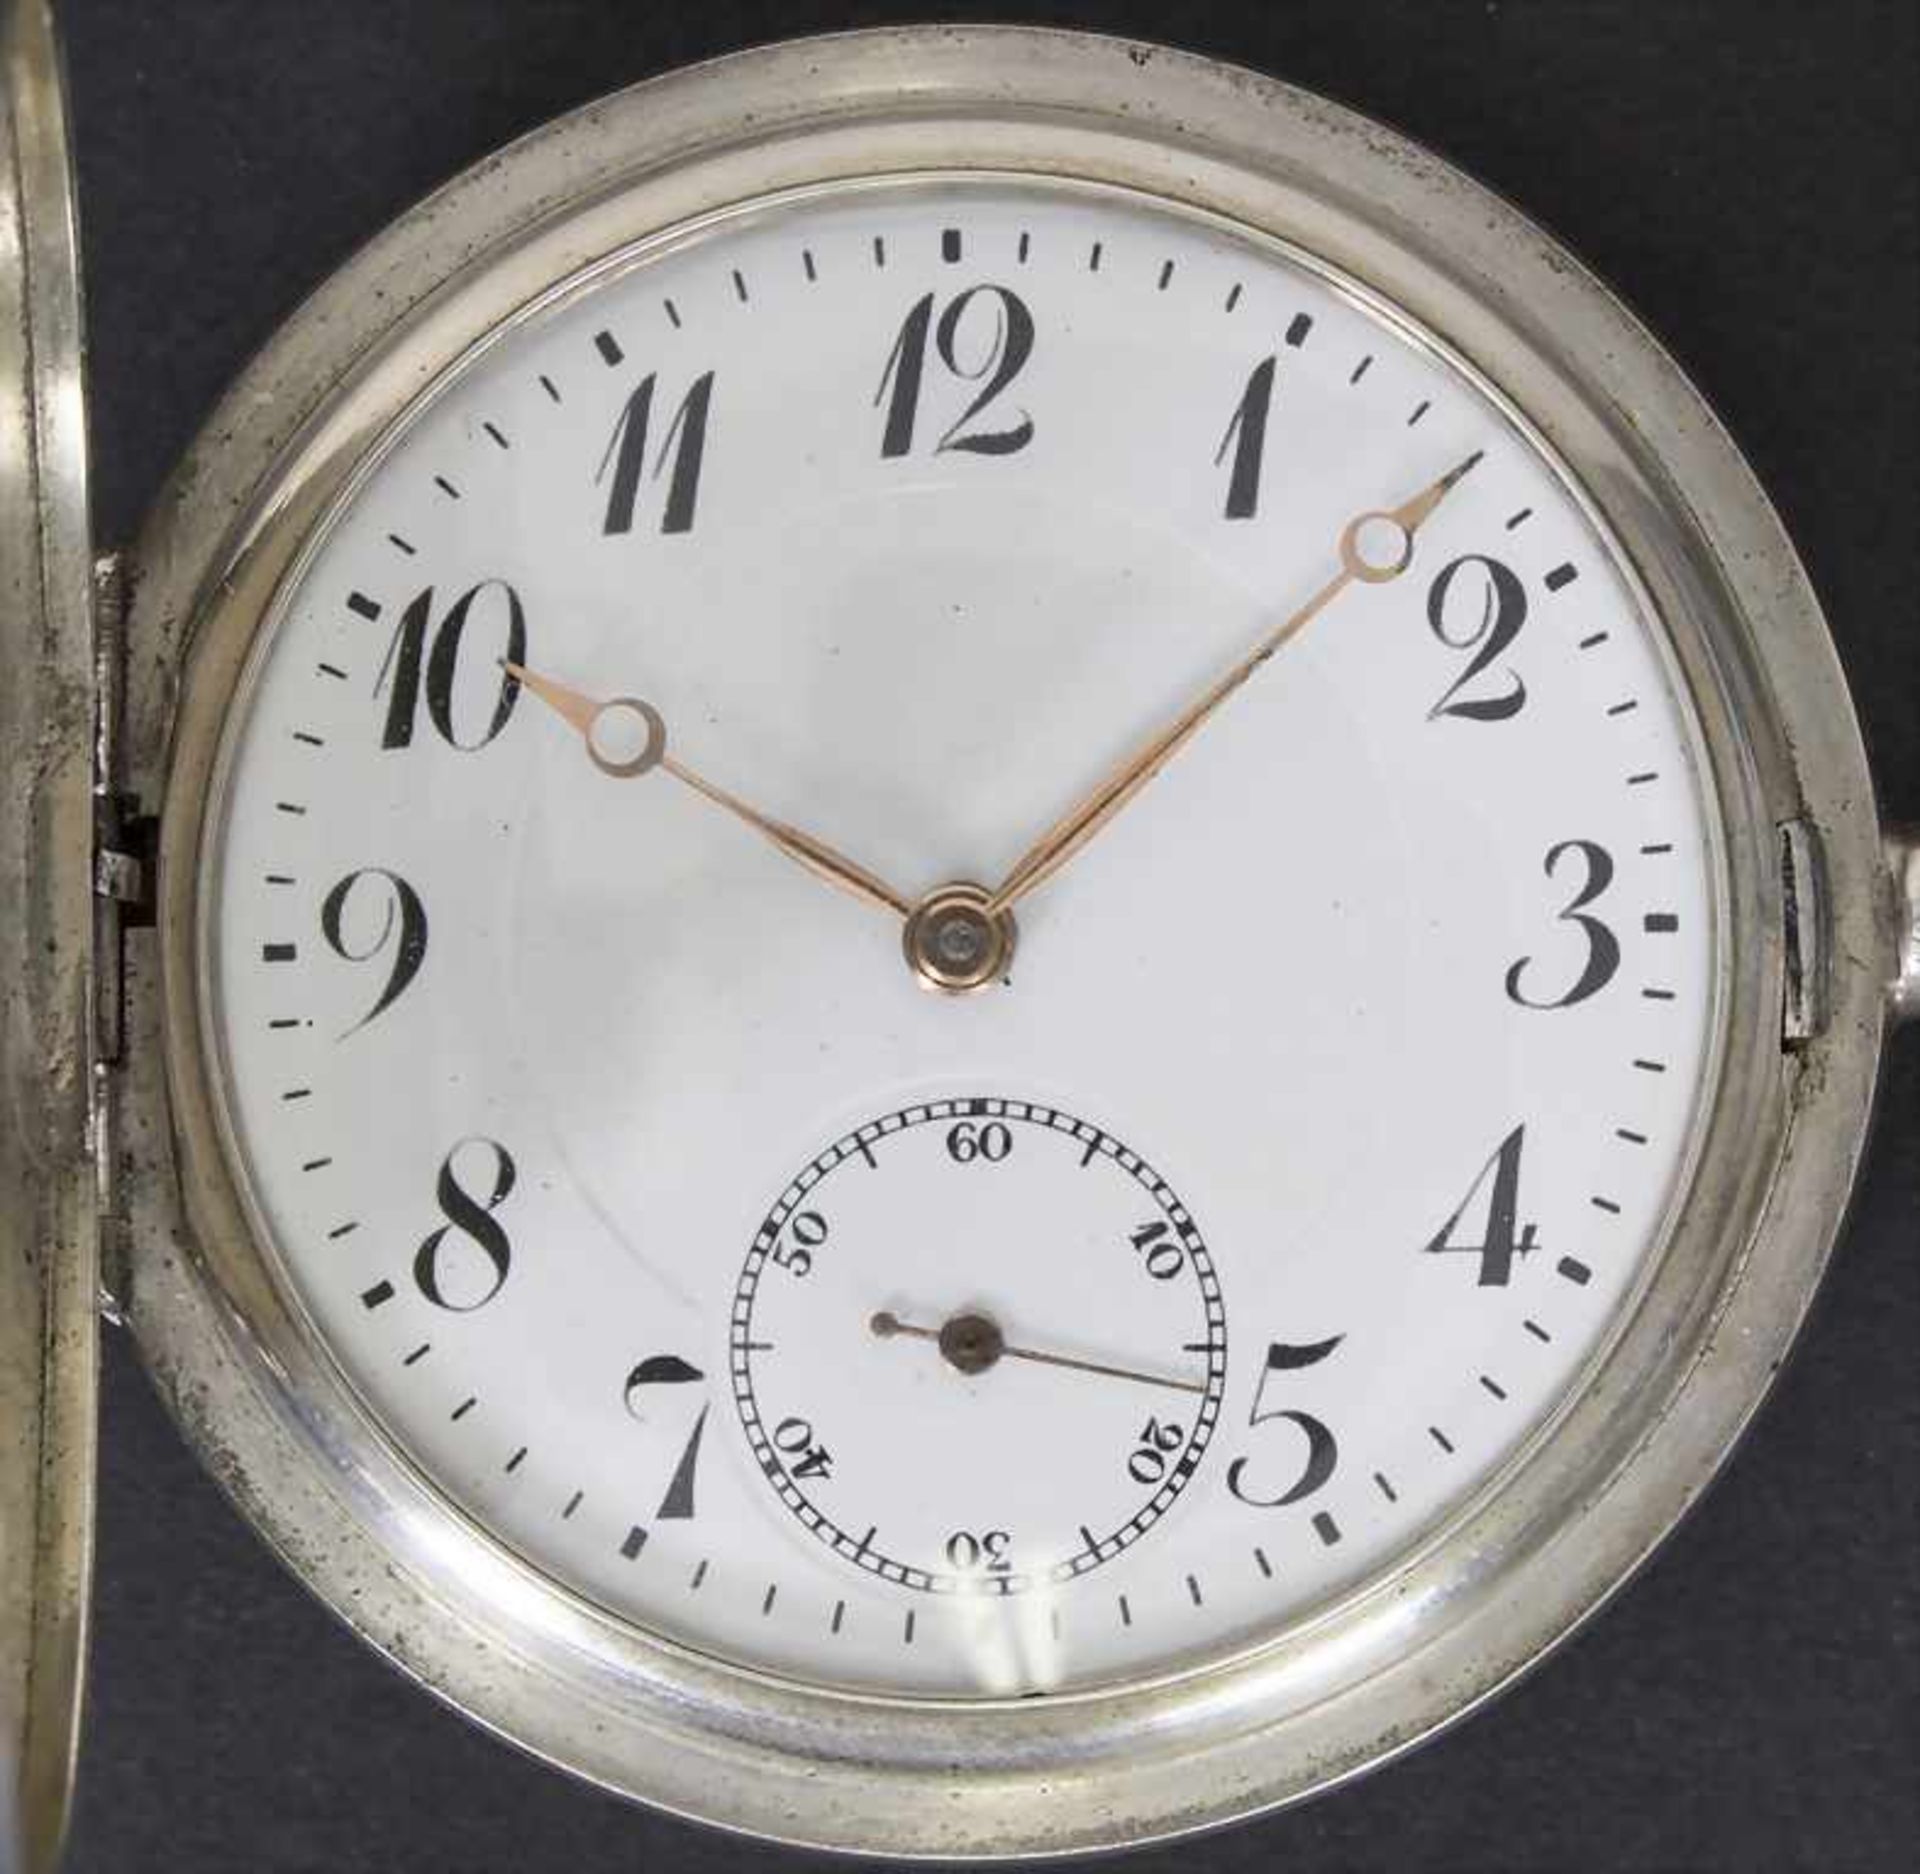 Taschenuhr Savonette / A pocket watch, Schweiz/SwissMaterial: Gehäuse, Staubdeckel und Uhrenkette